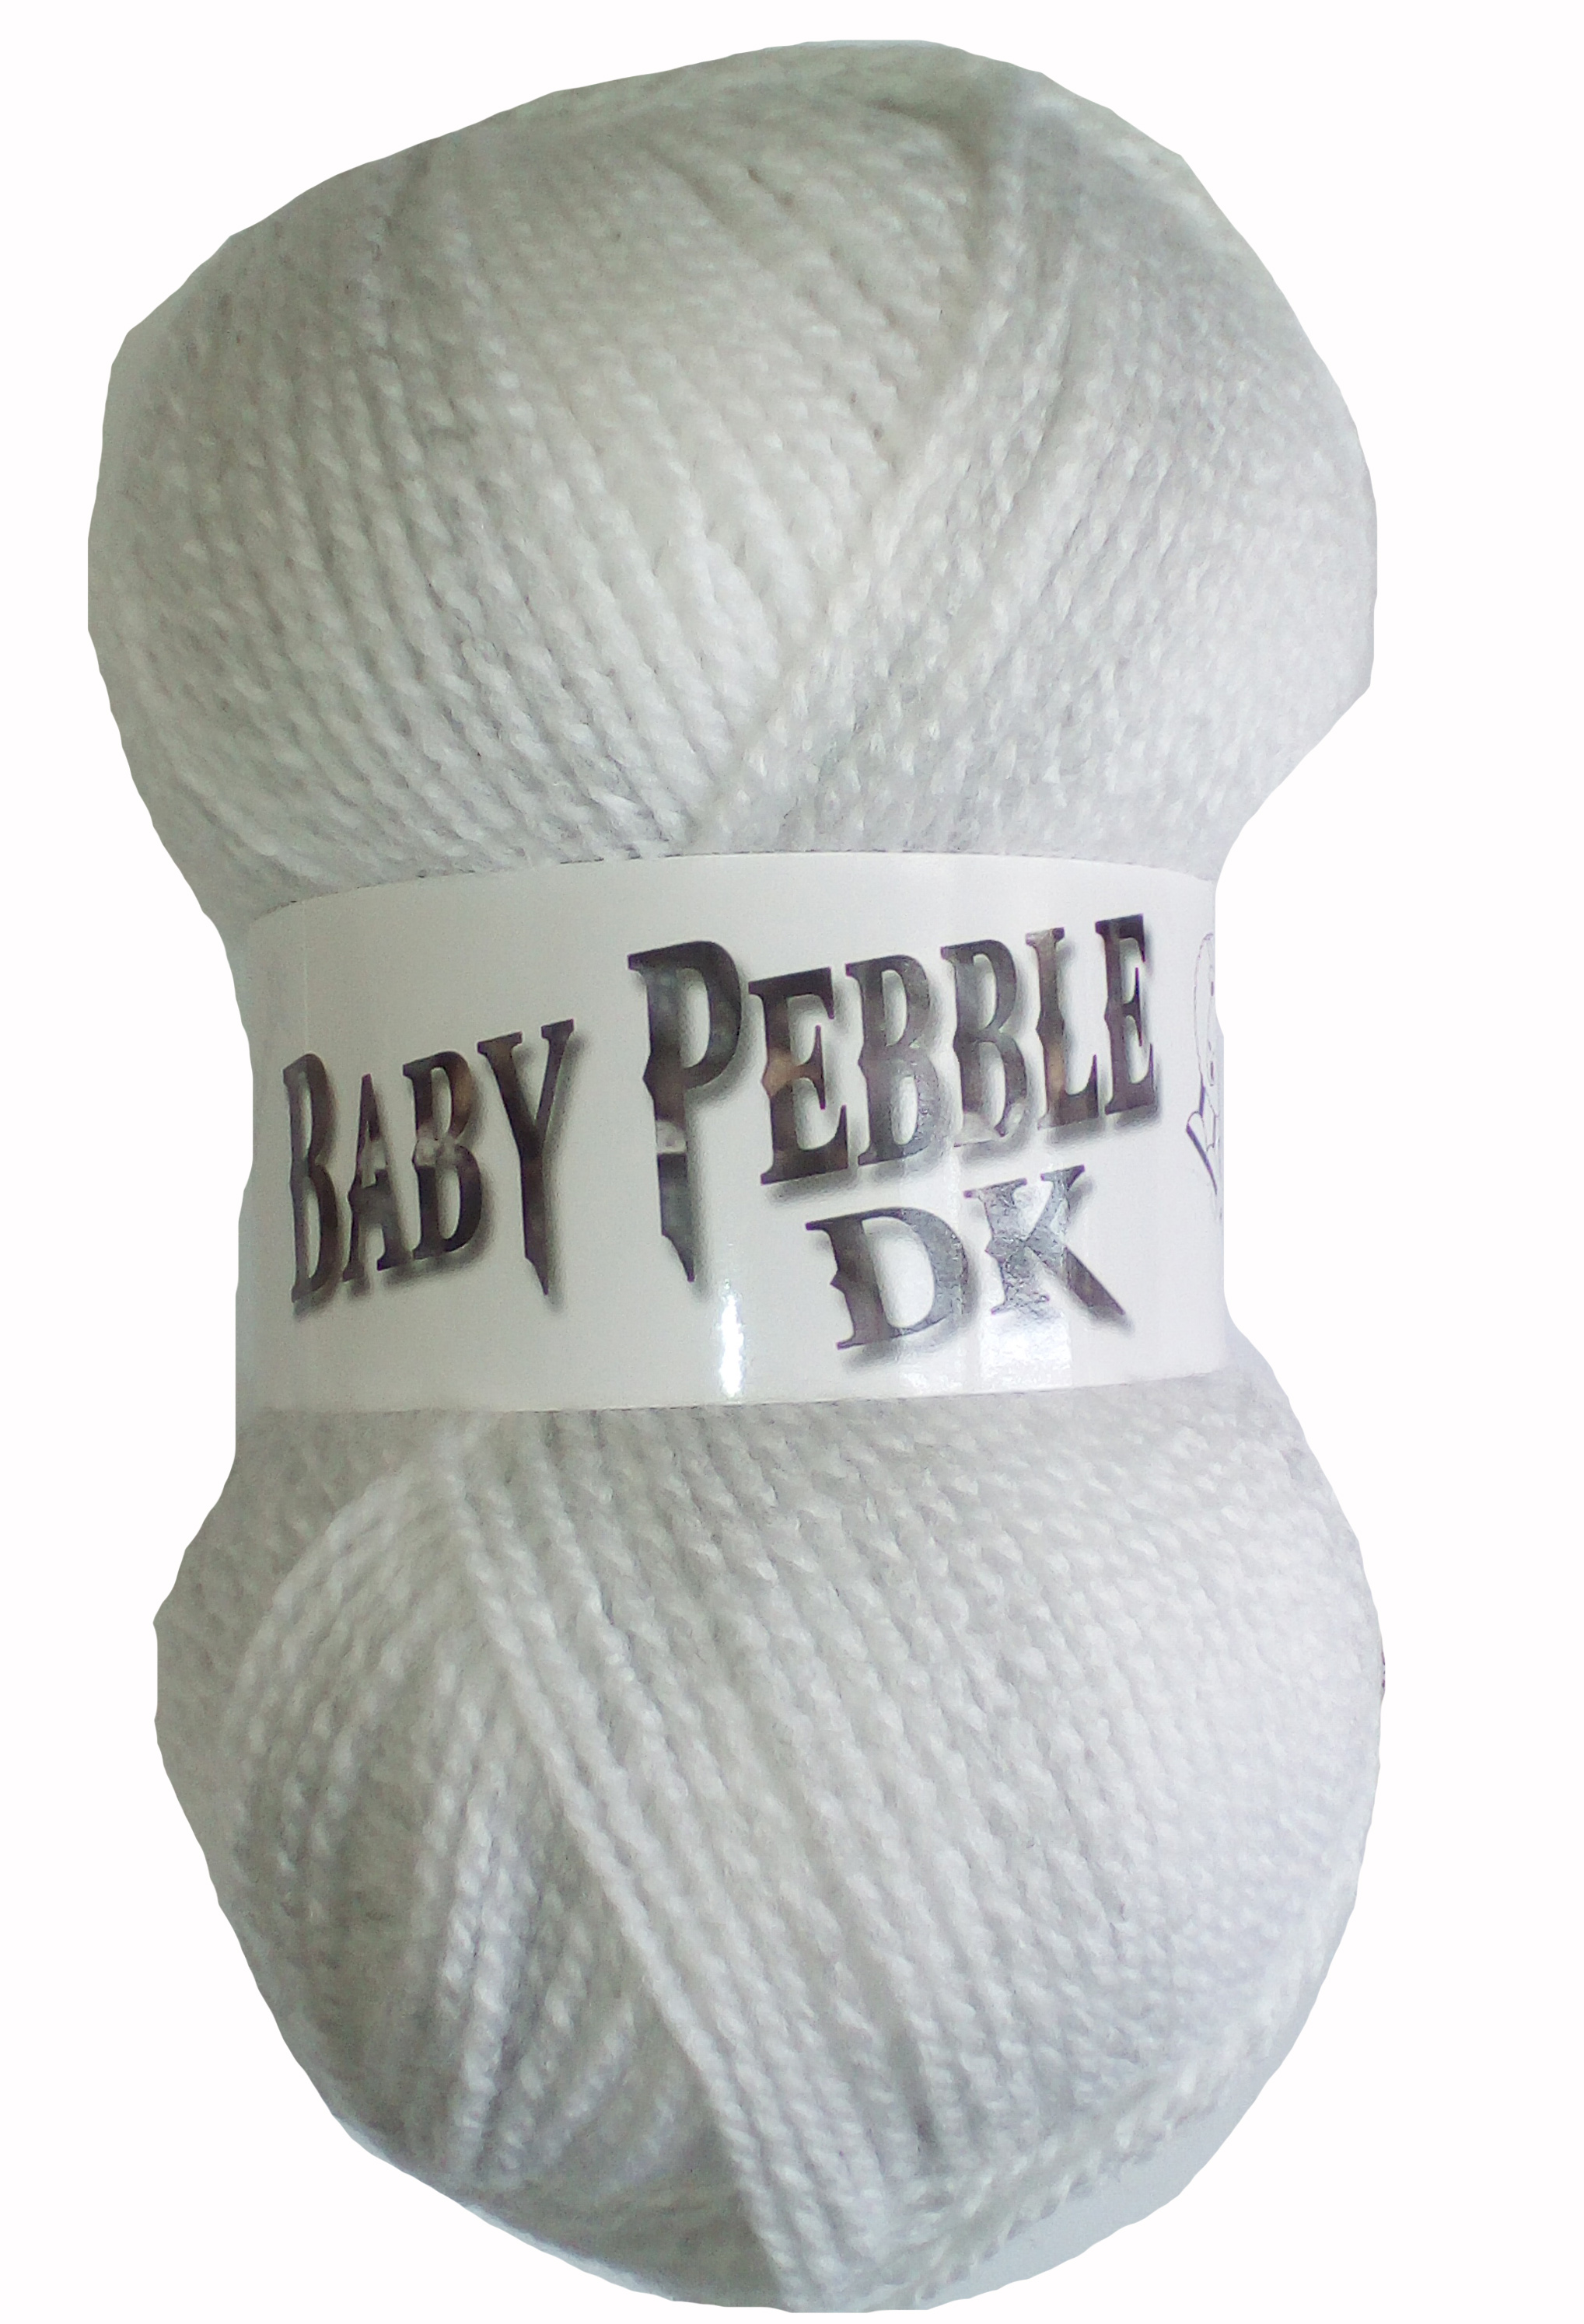 Baby Pebble 10x100g Balls Dove 108